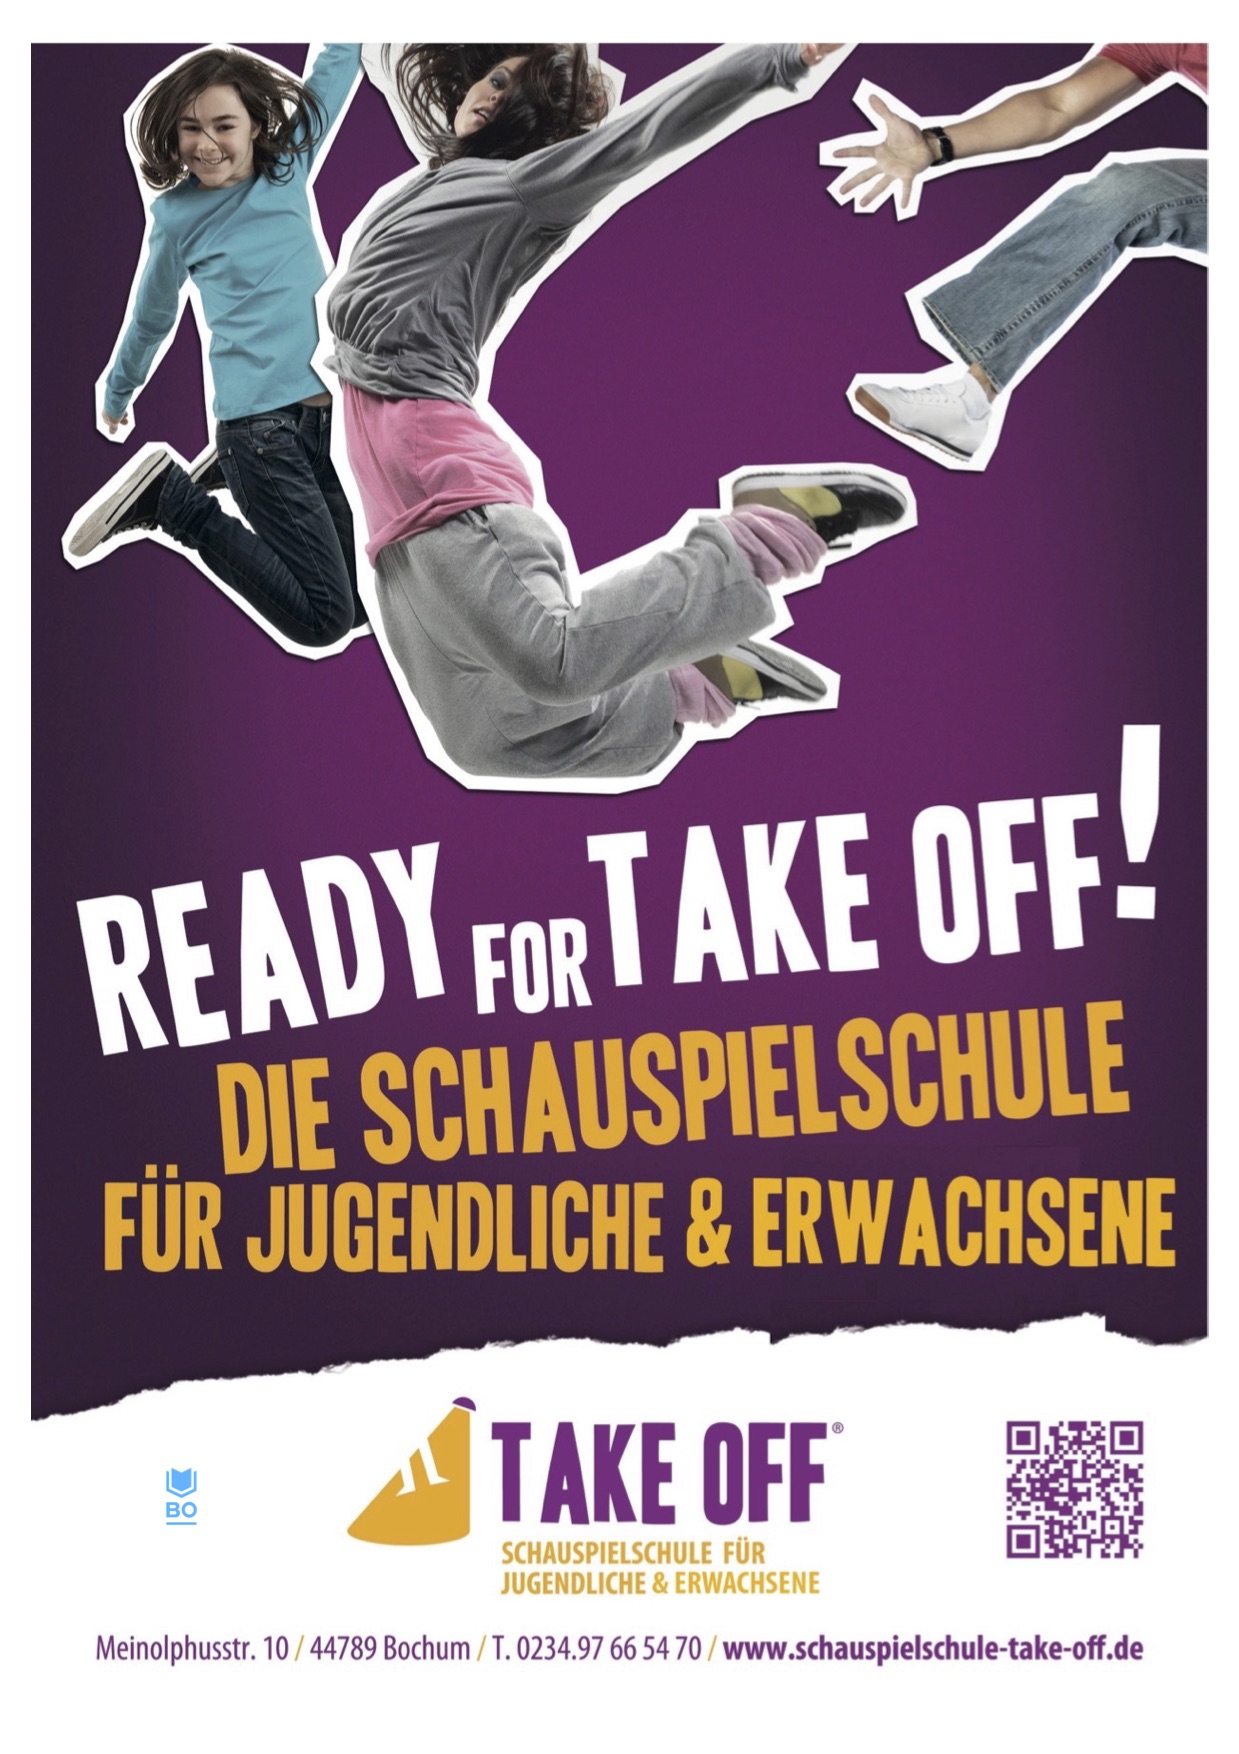 TAKE OFF Schauspielschule, Bochum, Plakat